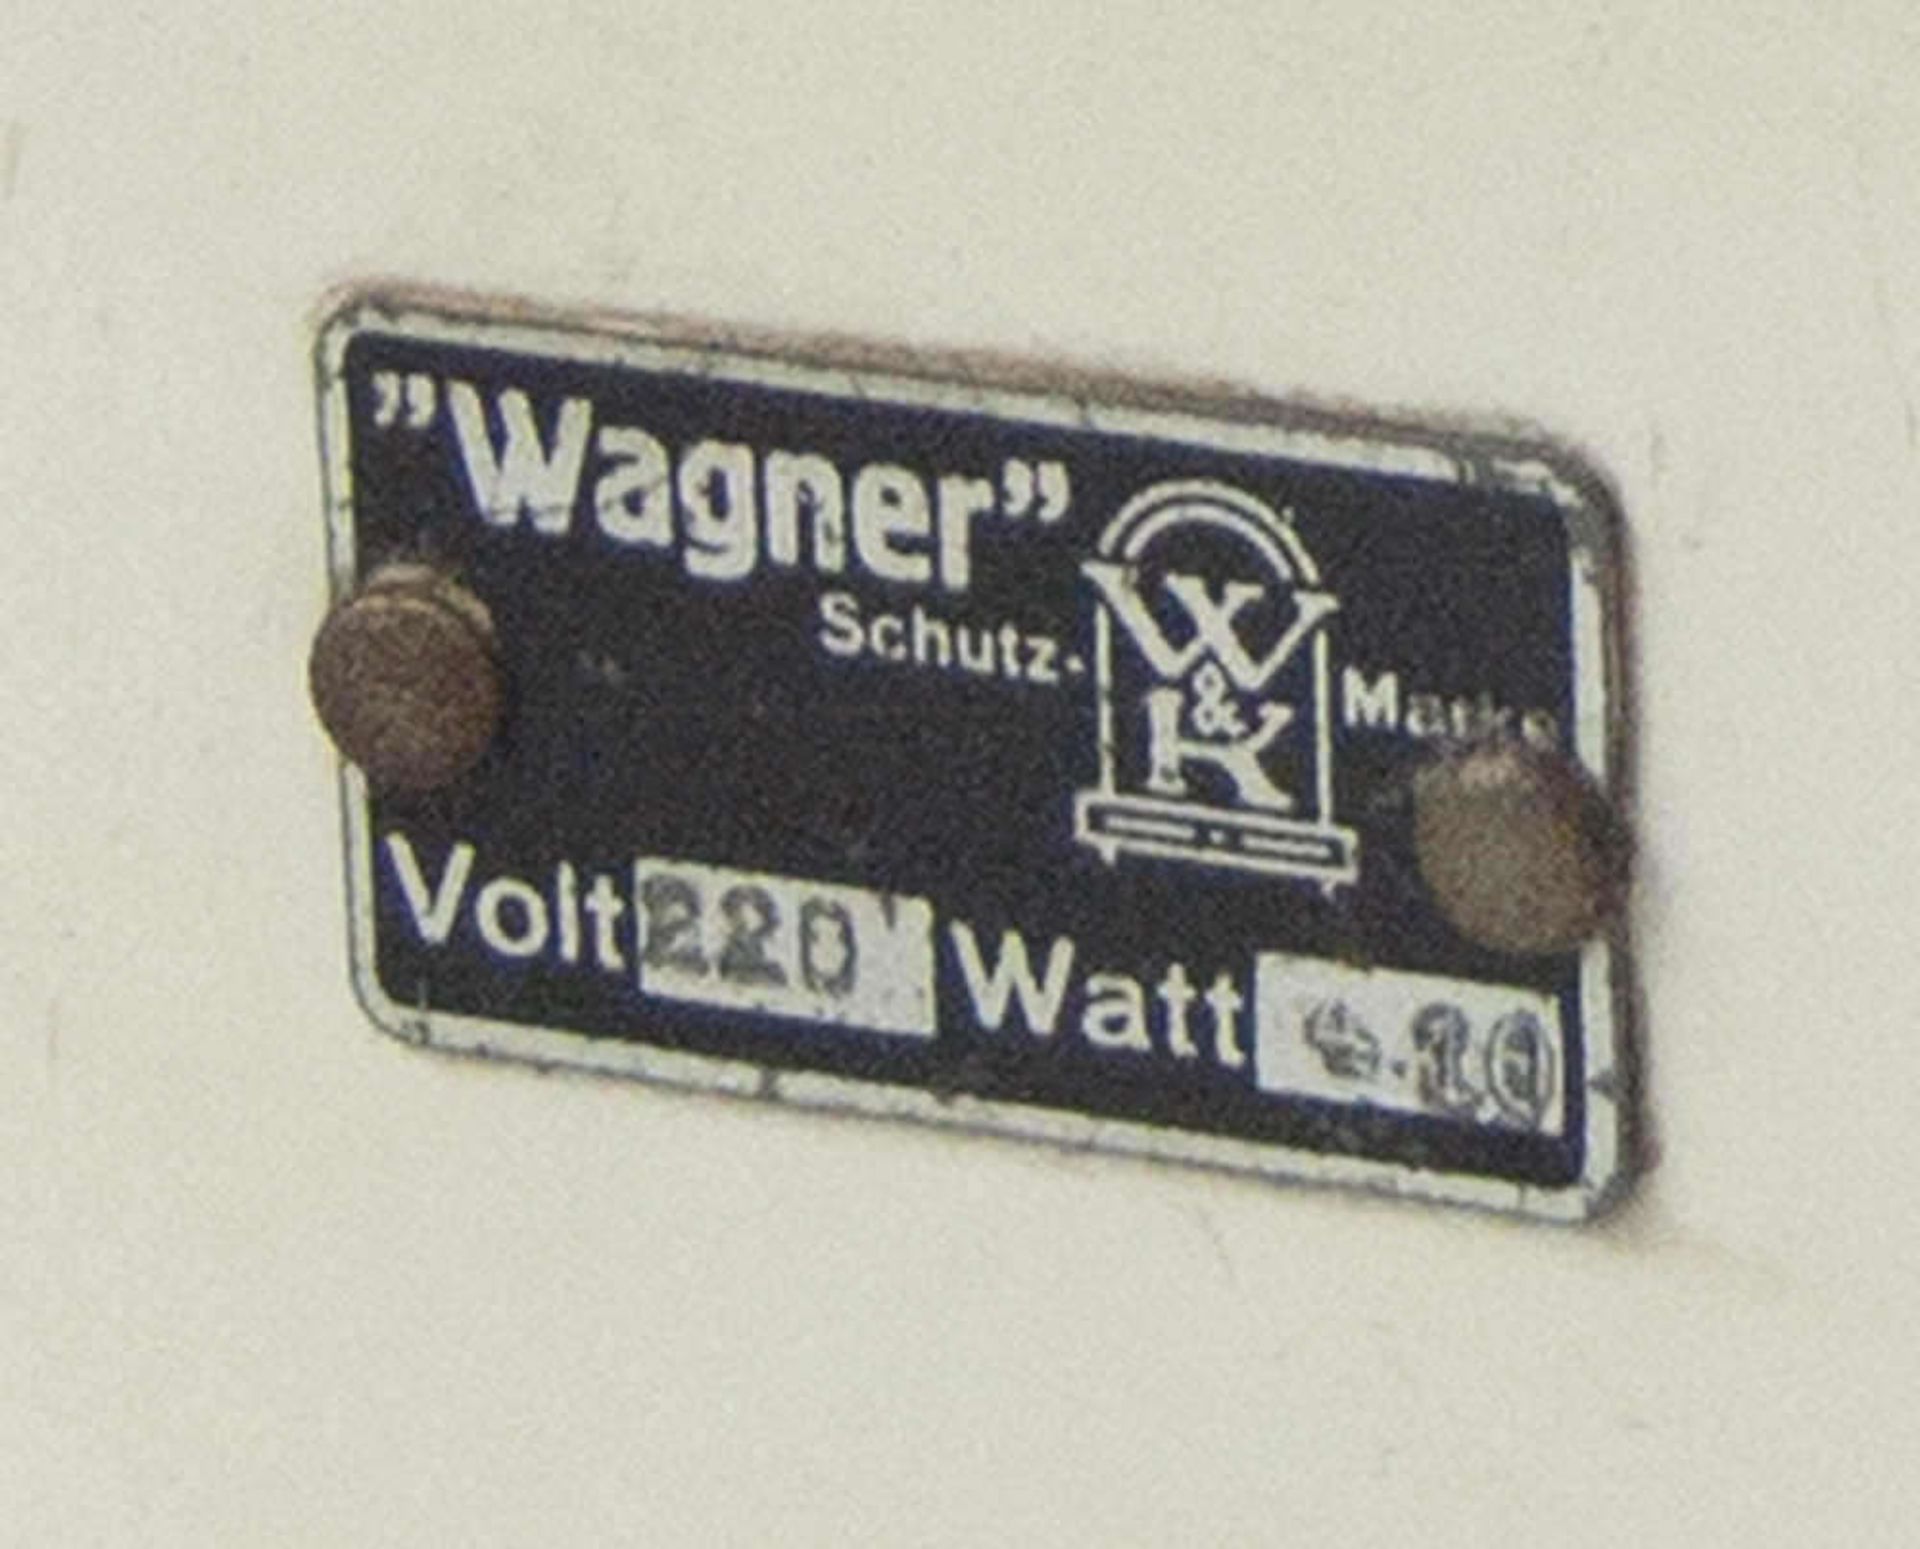 Puppen - Elektro - Herd "Wagner", 220 Volt. Mit zwei Töpfen. Funktion nicht geprüft. Puppen - - Bild 5 aus 5